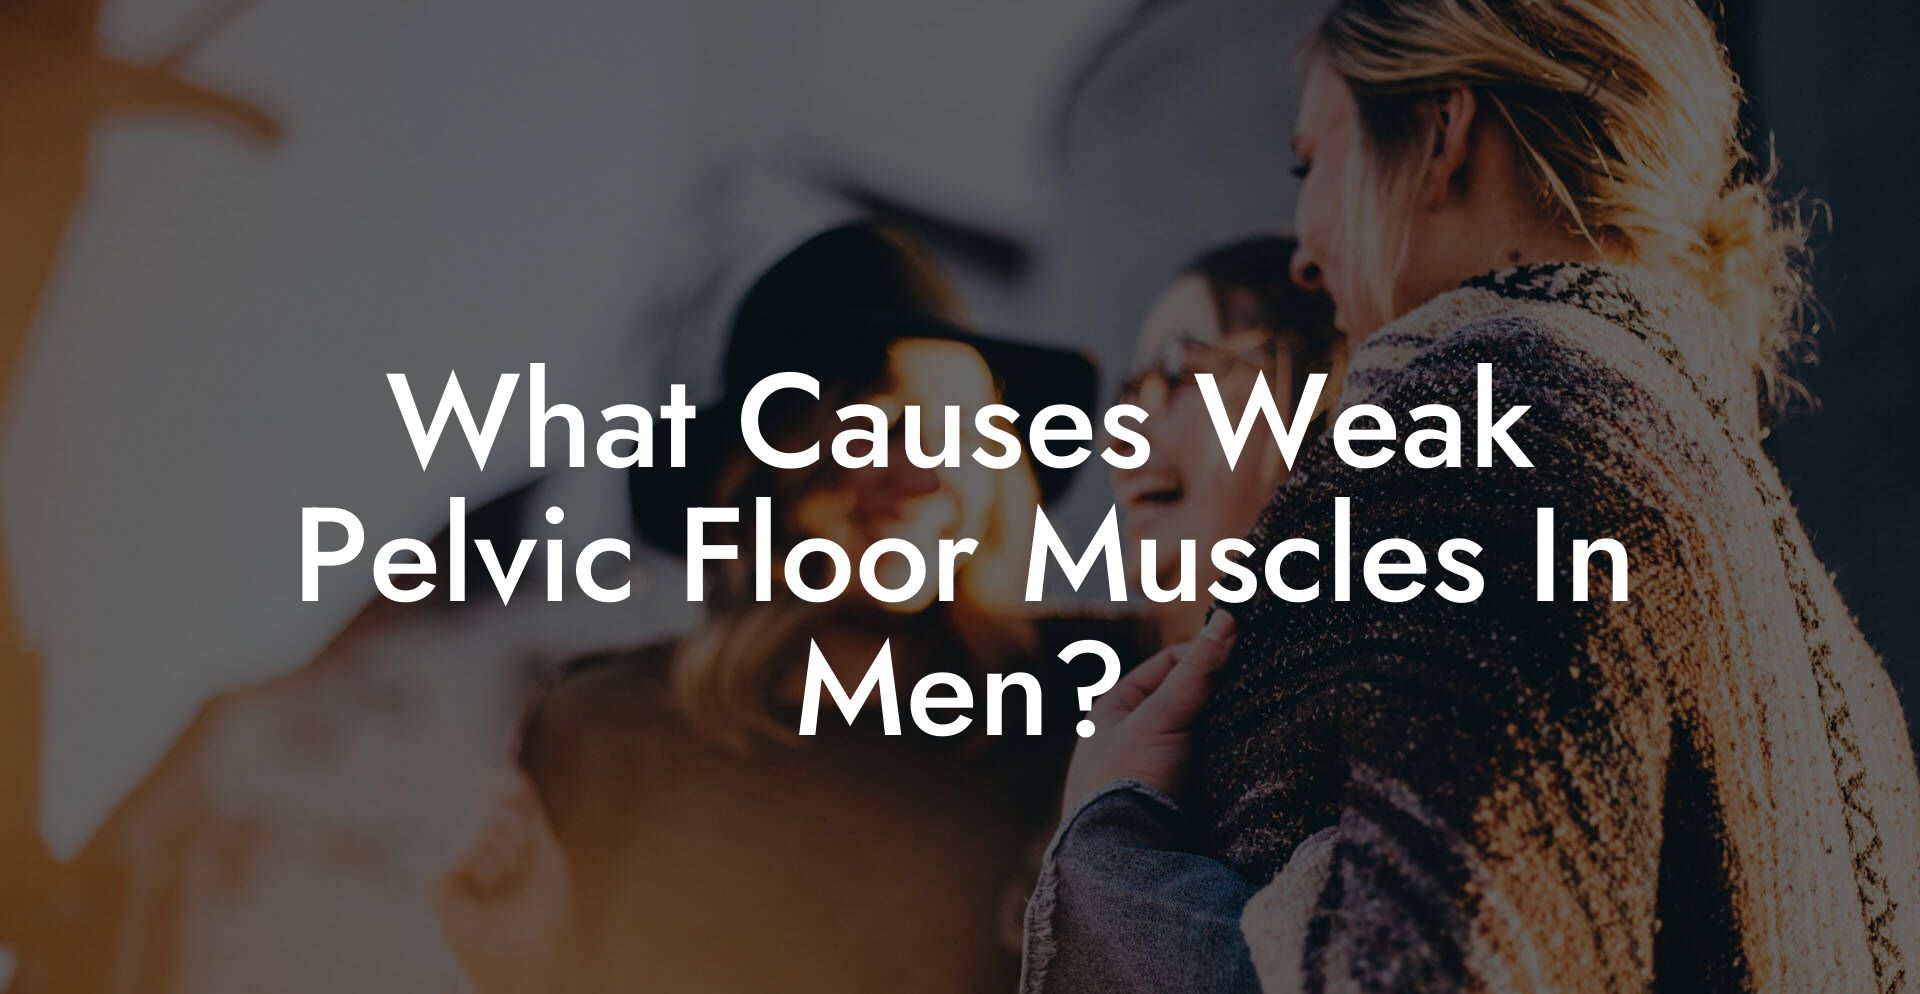 What Causes Weak Pelvic Floor Muscles In Men?